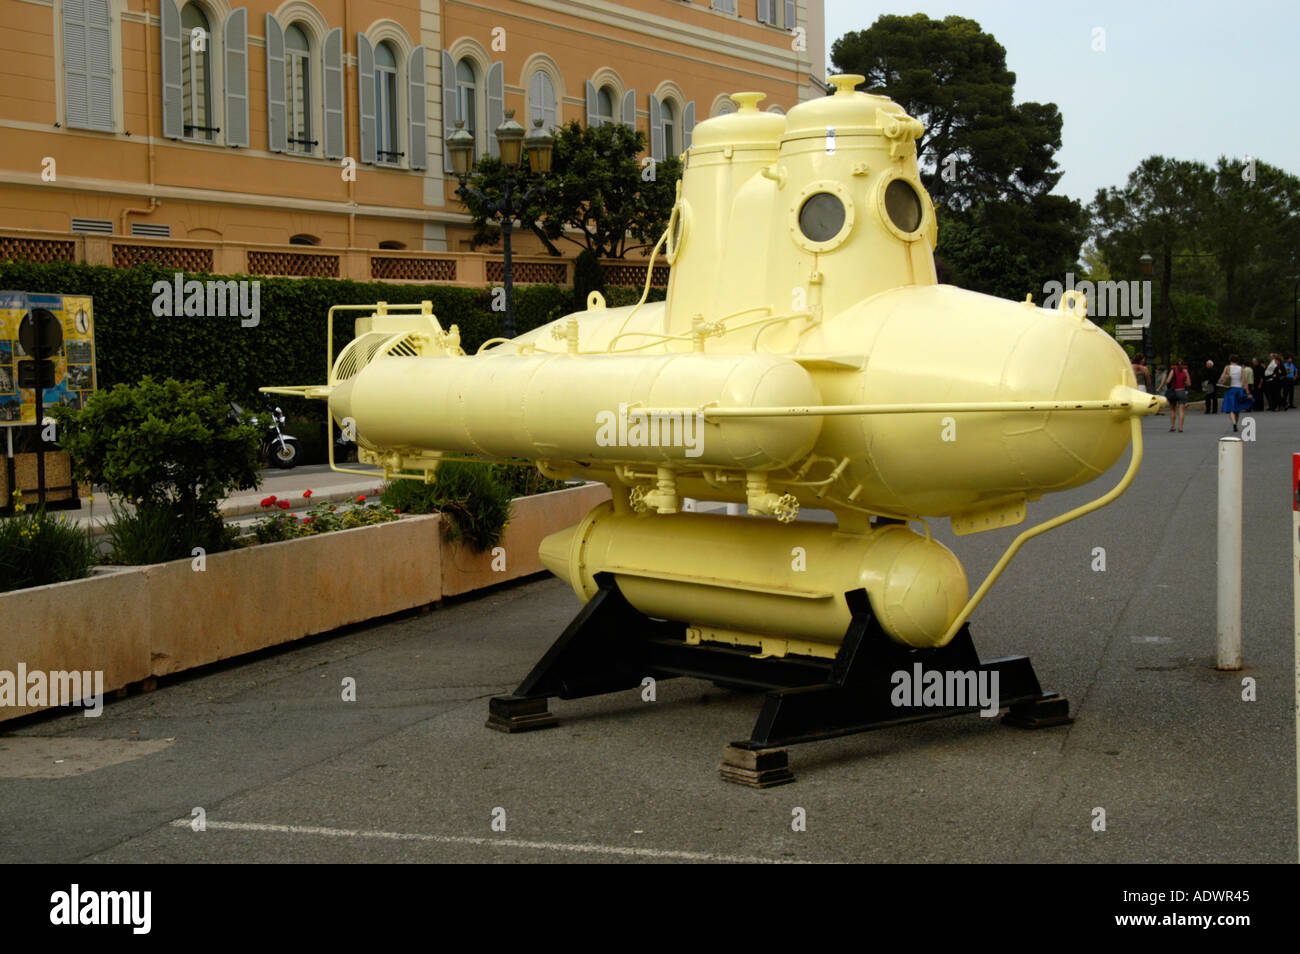 Gelben u-Boot außerhalb das ozeanographische Museum, Monaco Stockfoto